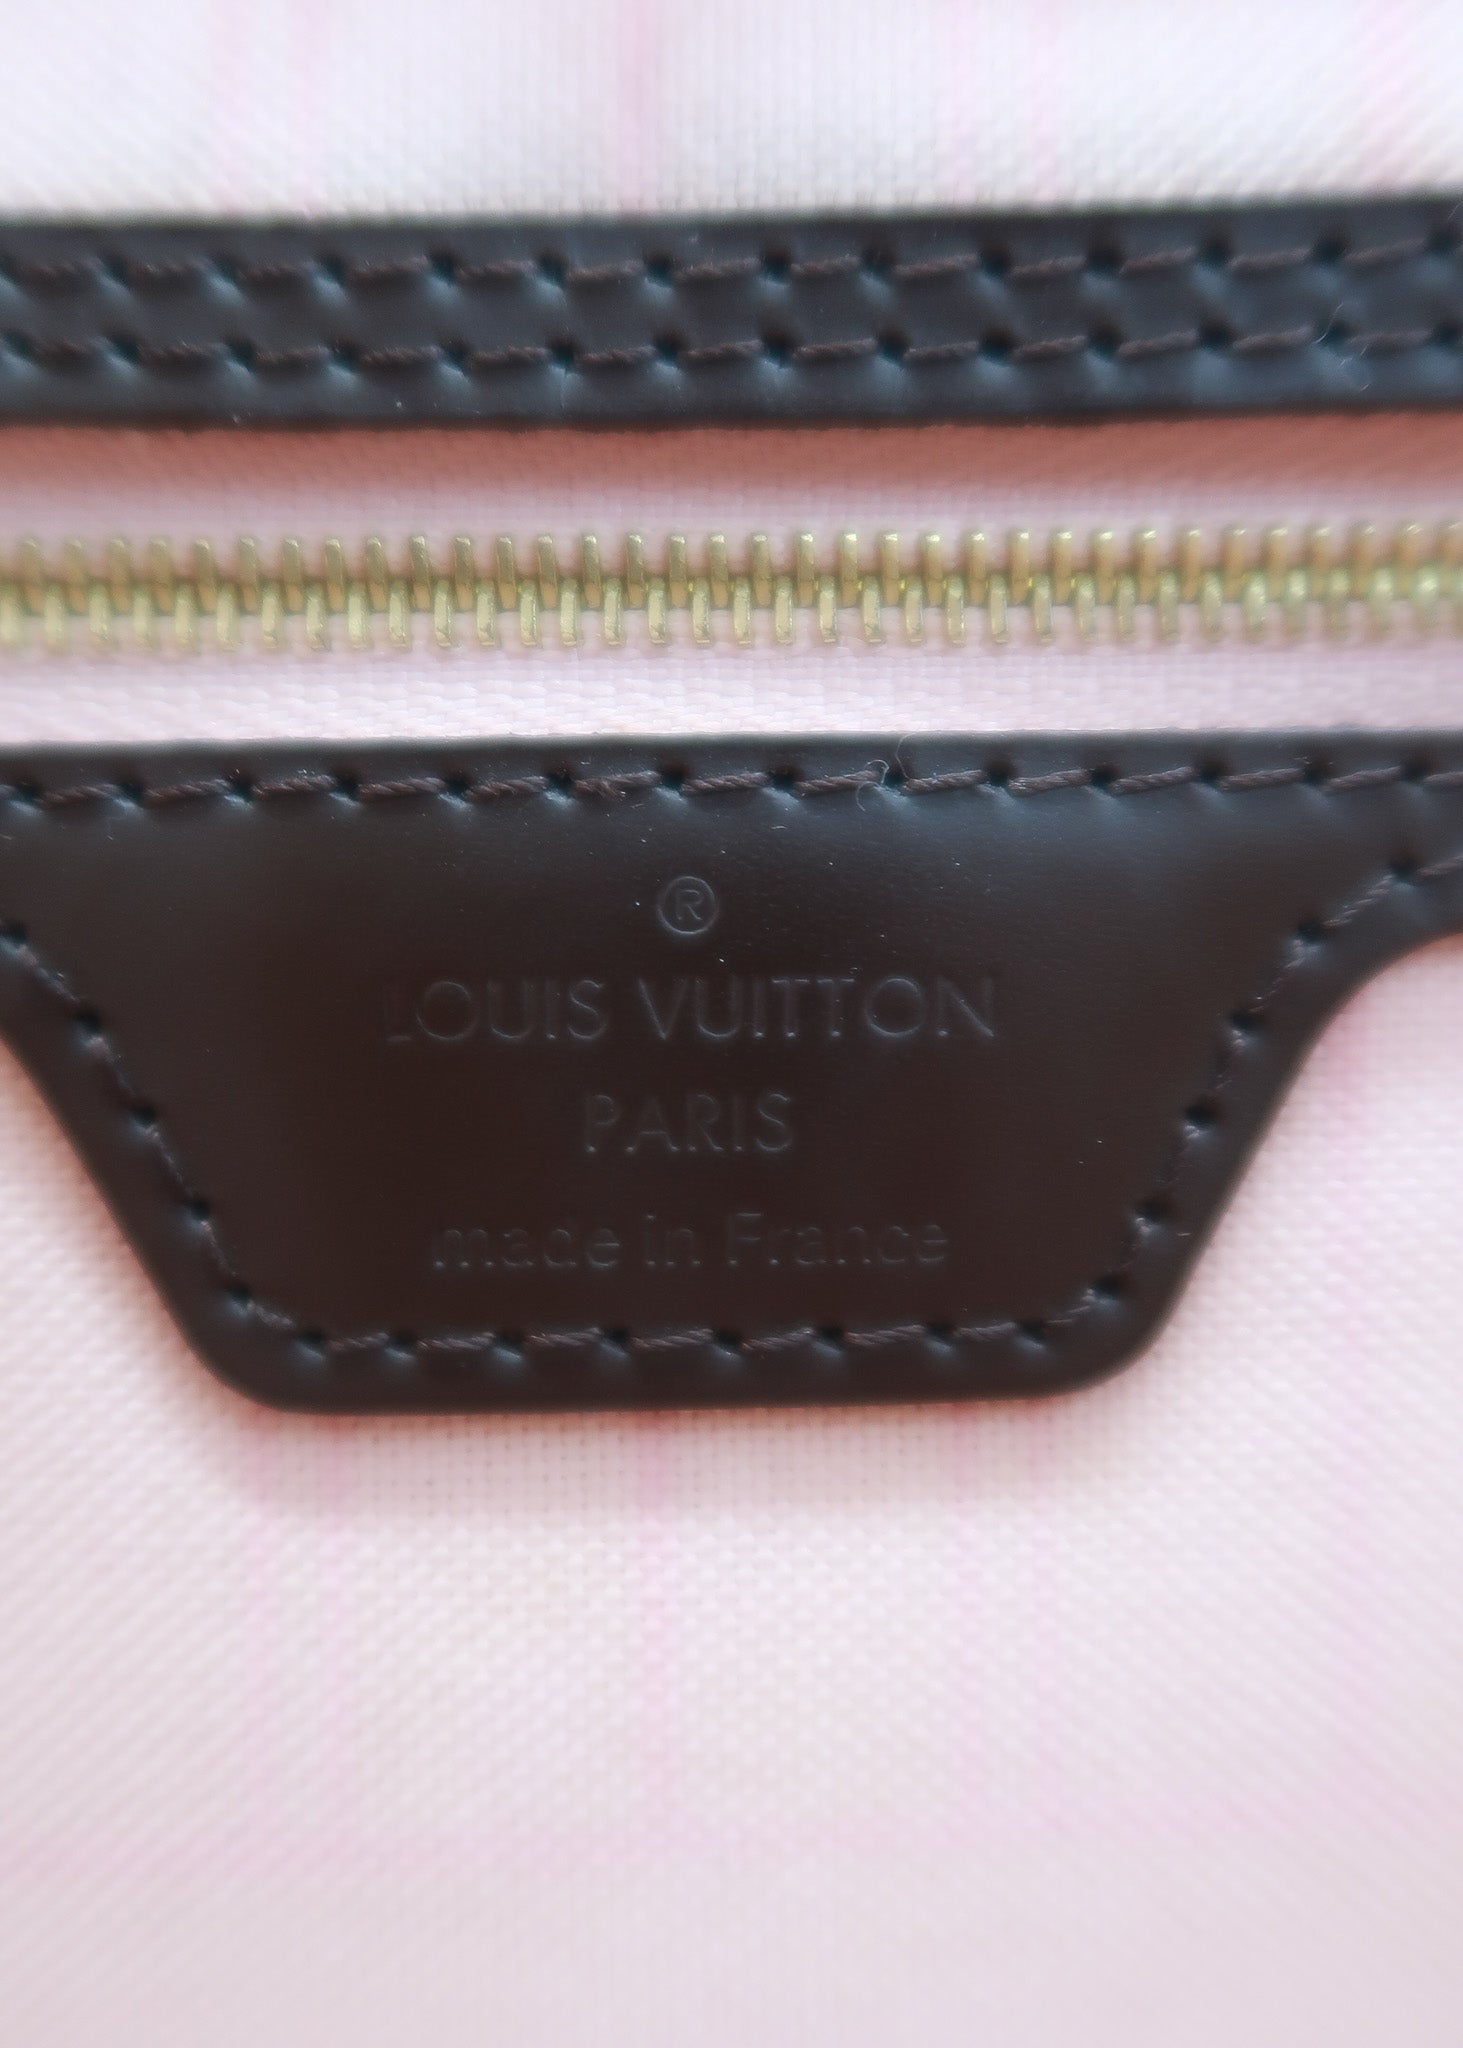 Louis Vuitton neverfull damier ebene with Rose ballerine …